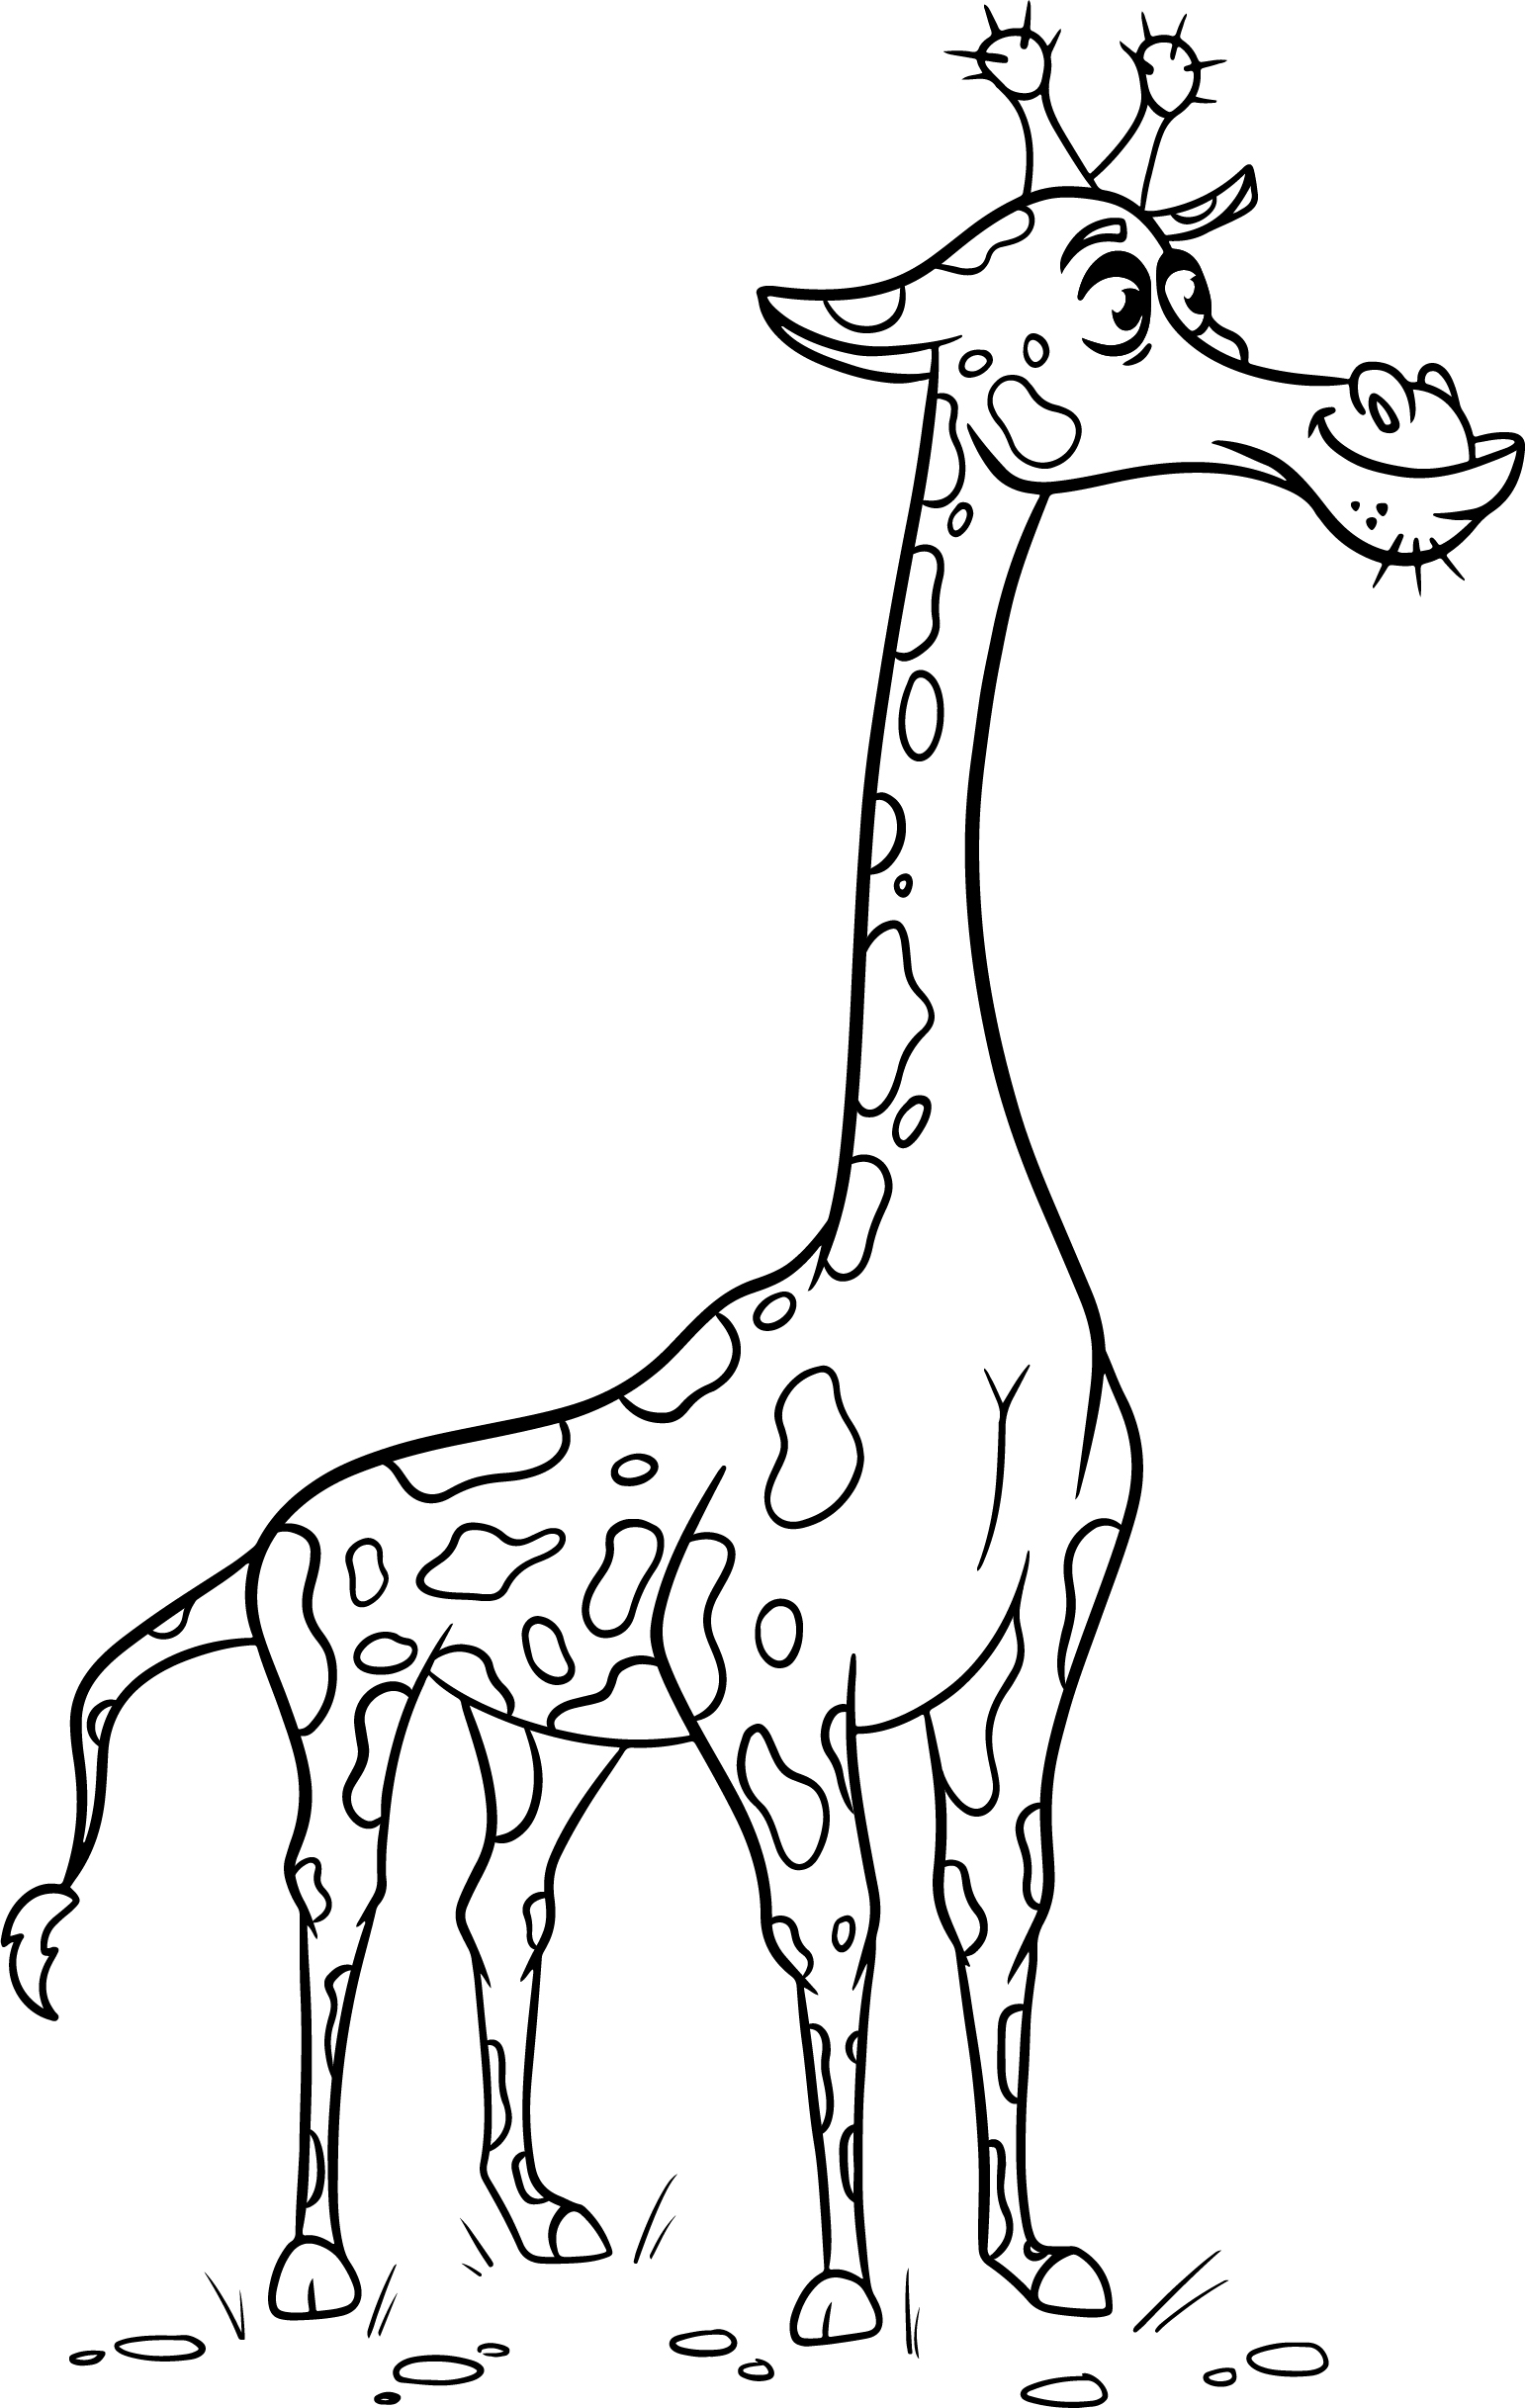 Раскраска большой забавный жираф формата А4 в высоком качестве